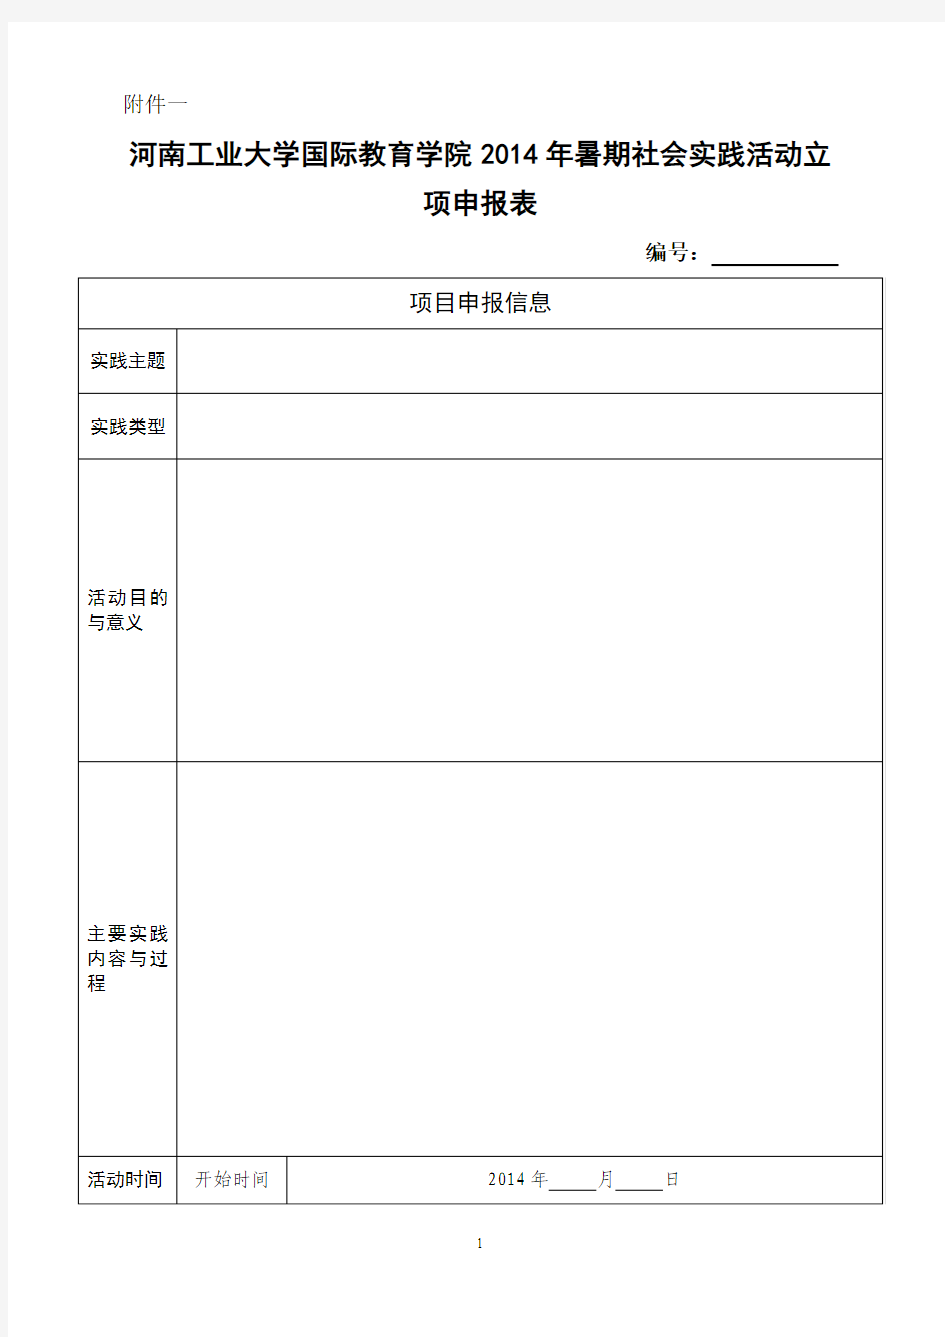 河南工业大学2014年暑期社会实践活动立项申报表 2 (1)